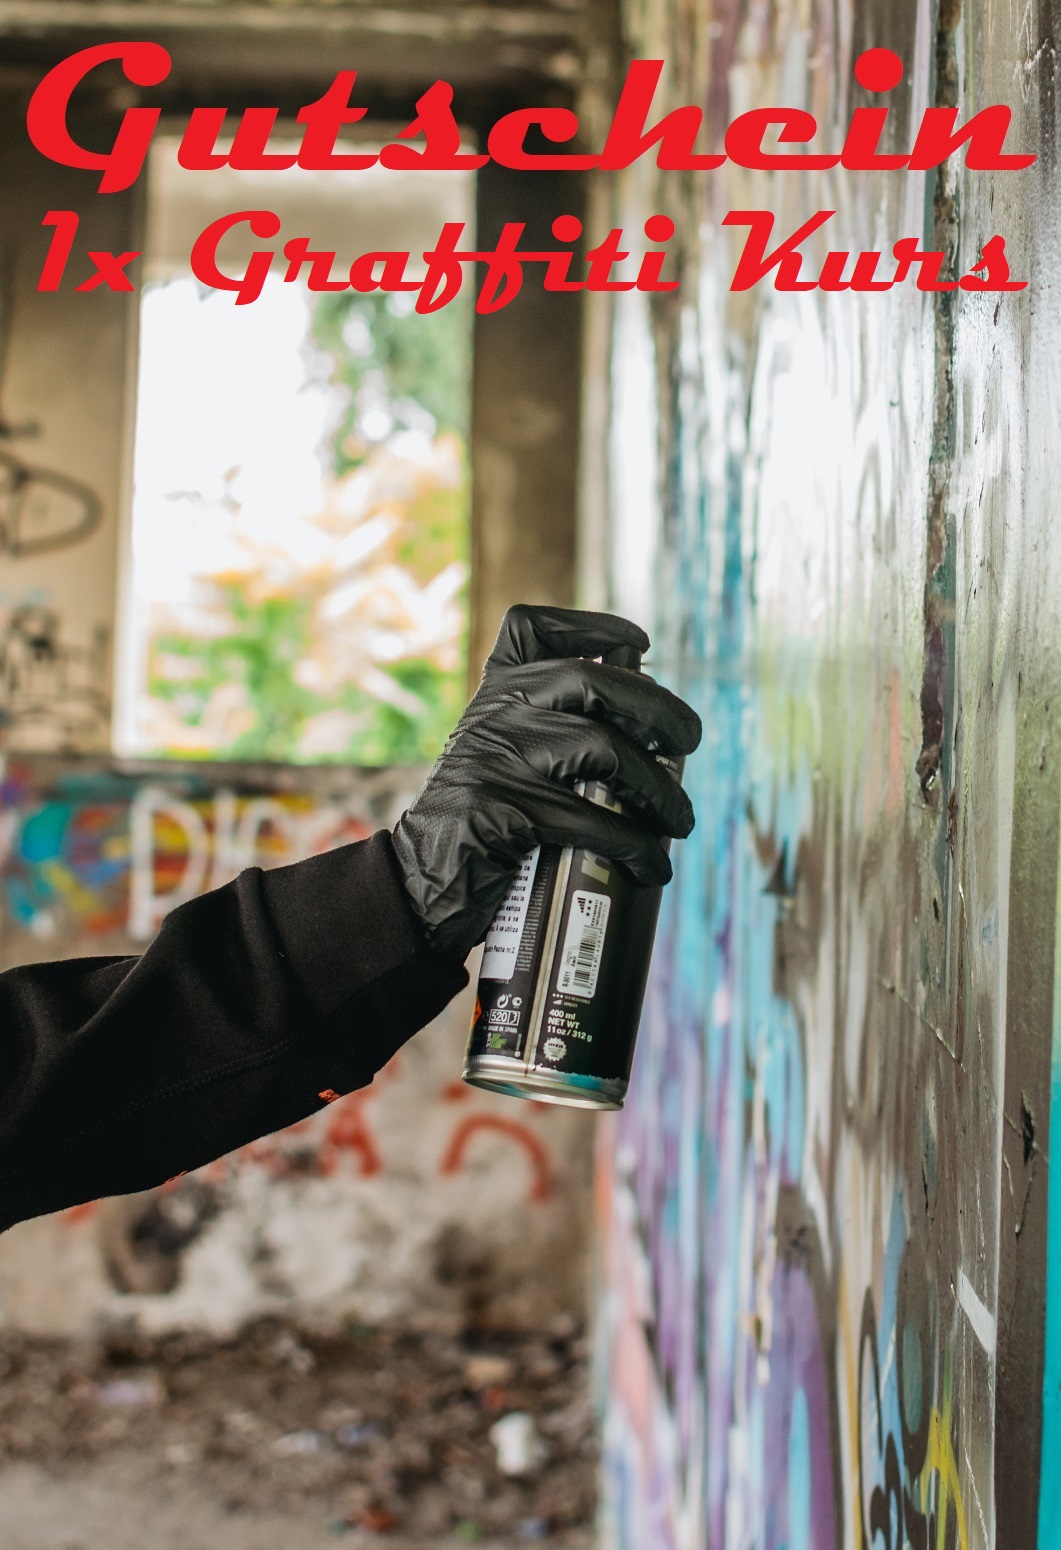 Gutscheinvorlage für Graffiti Kurse